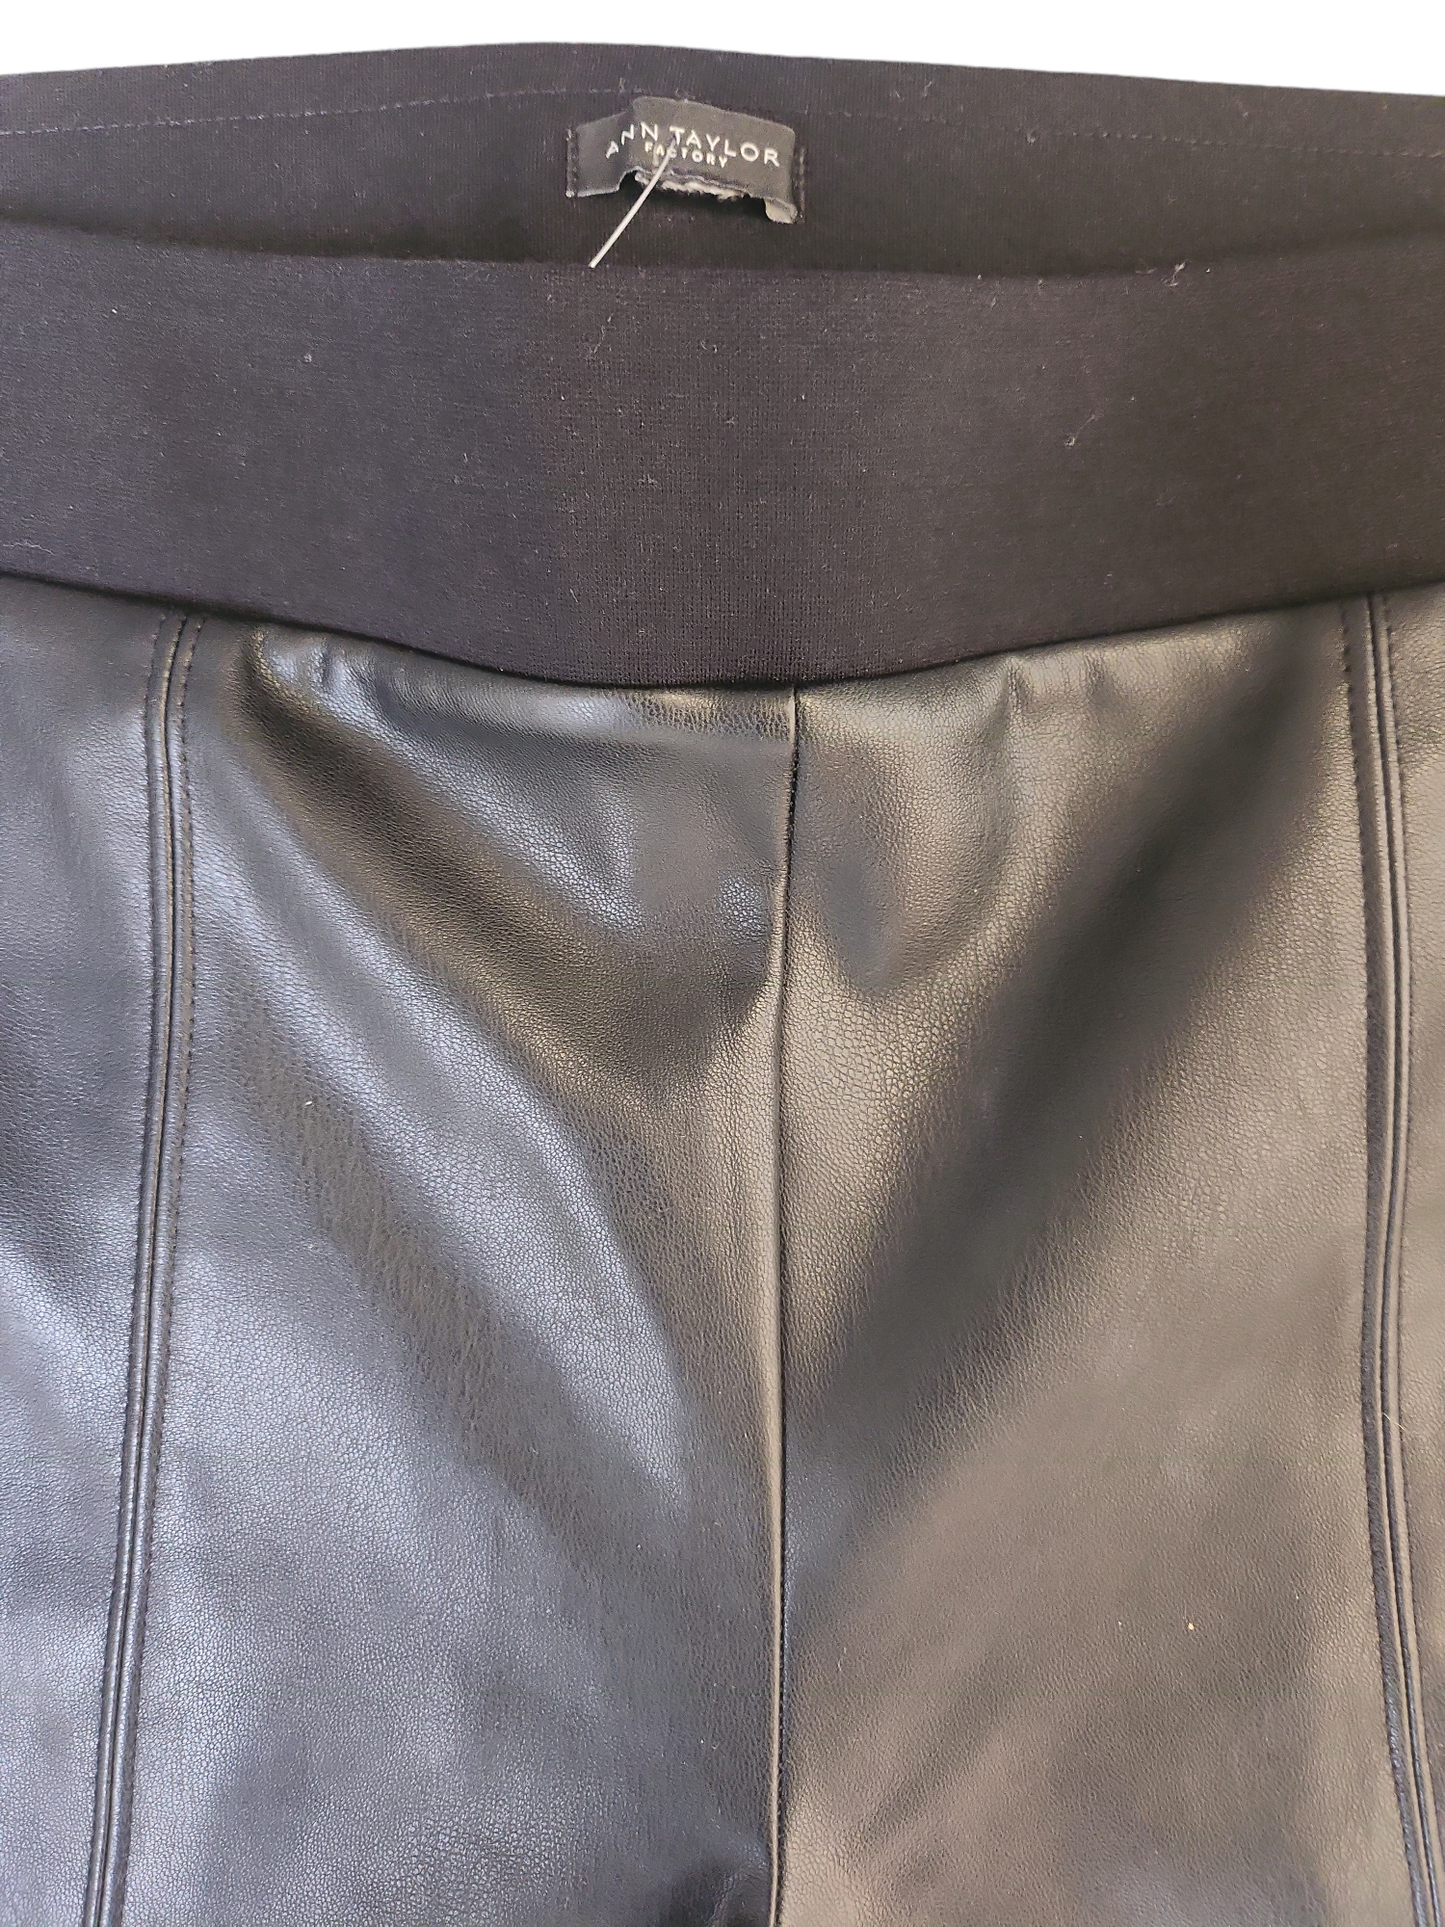 Ann Taylor Fashion Black Faux Leather Skinny Dress Pants Size 8